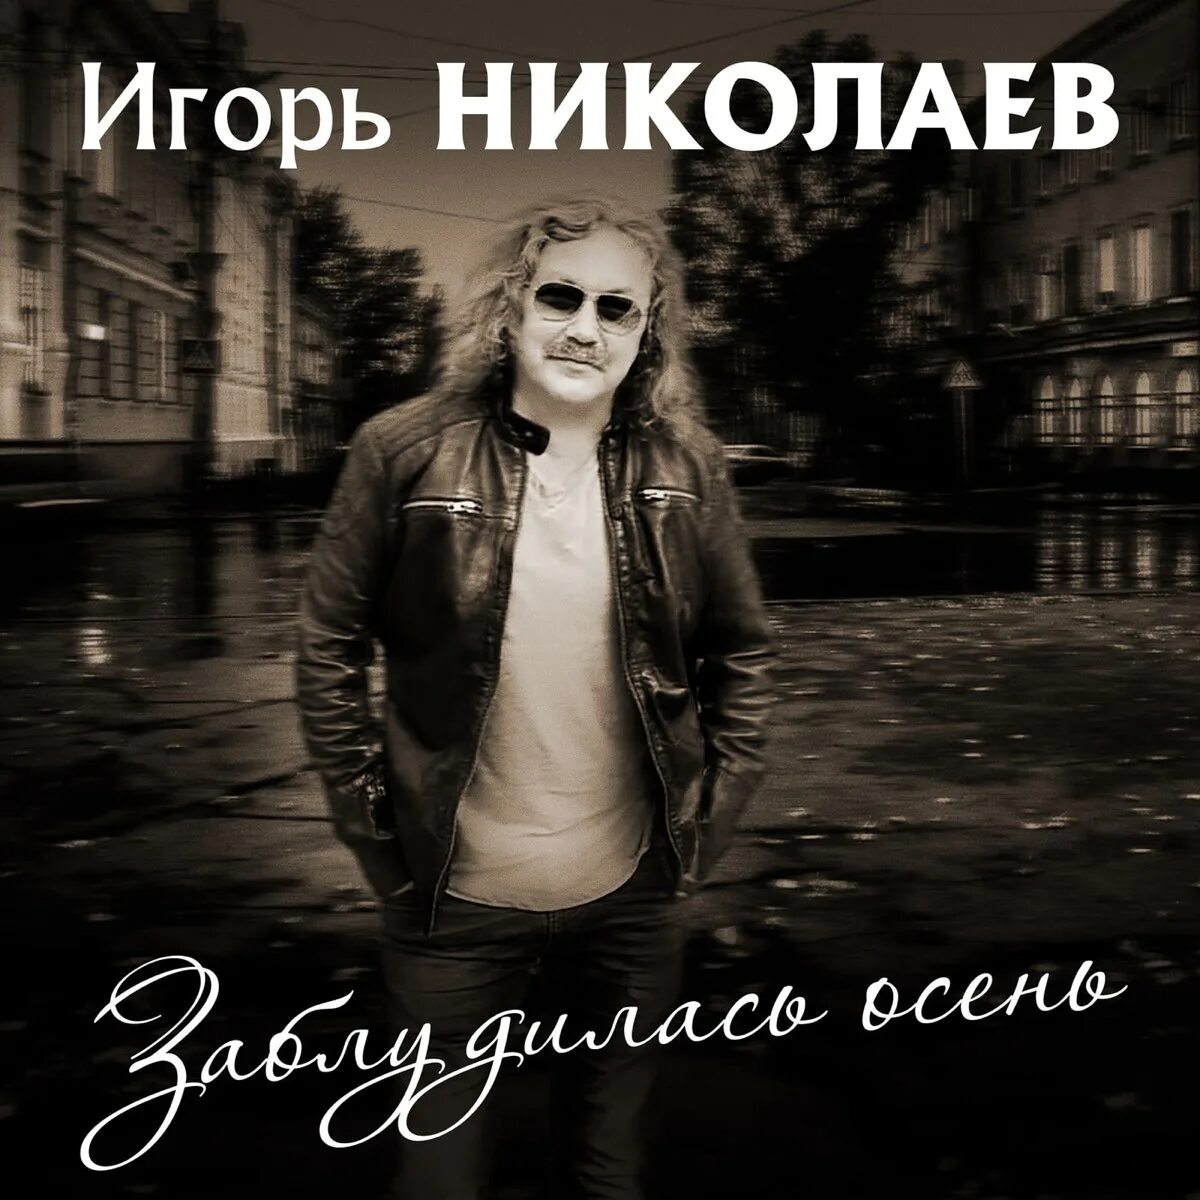 Николаев песни альбом. Николаев обложки.